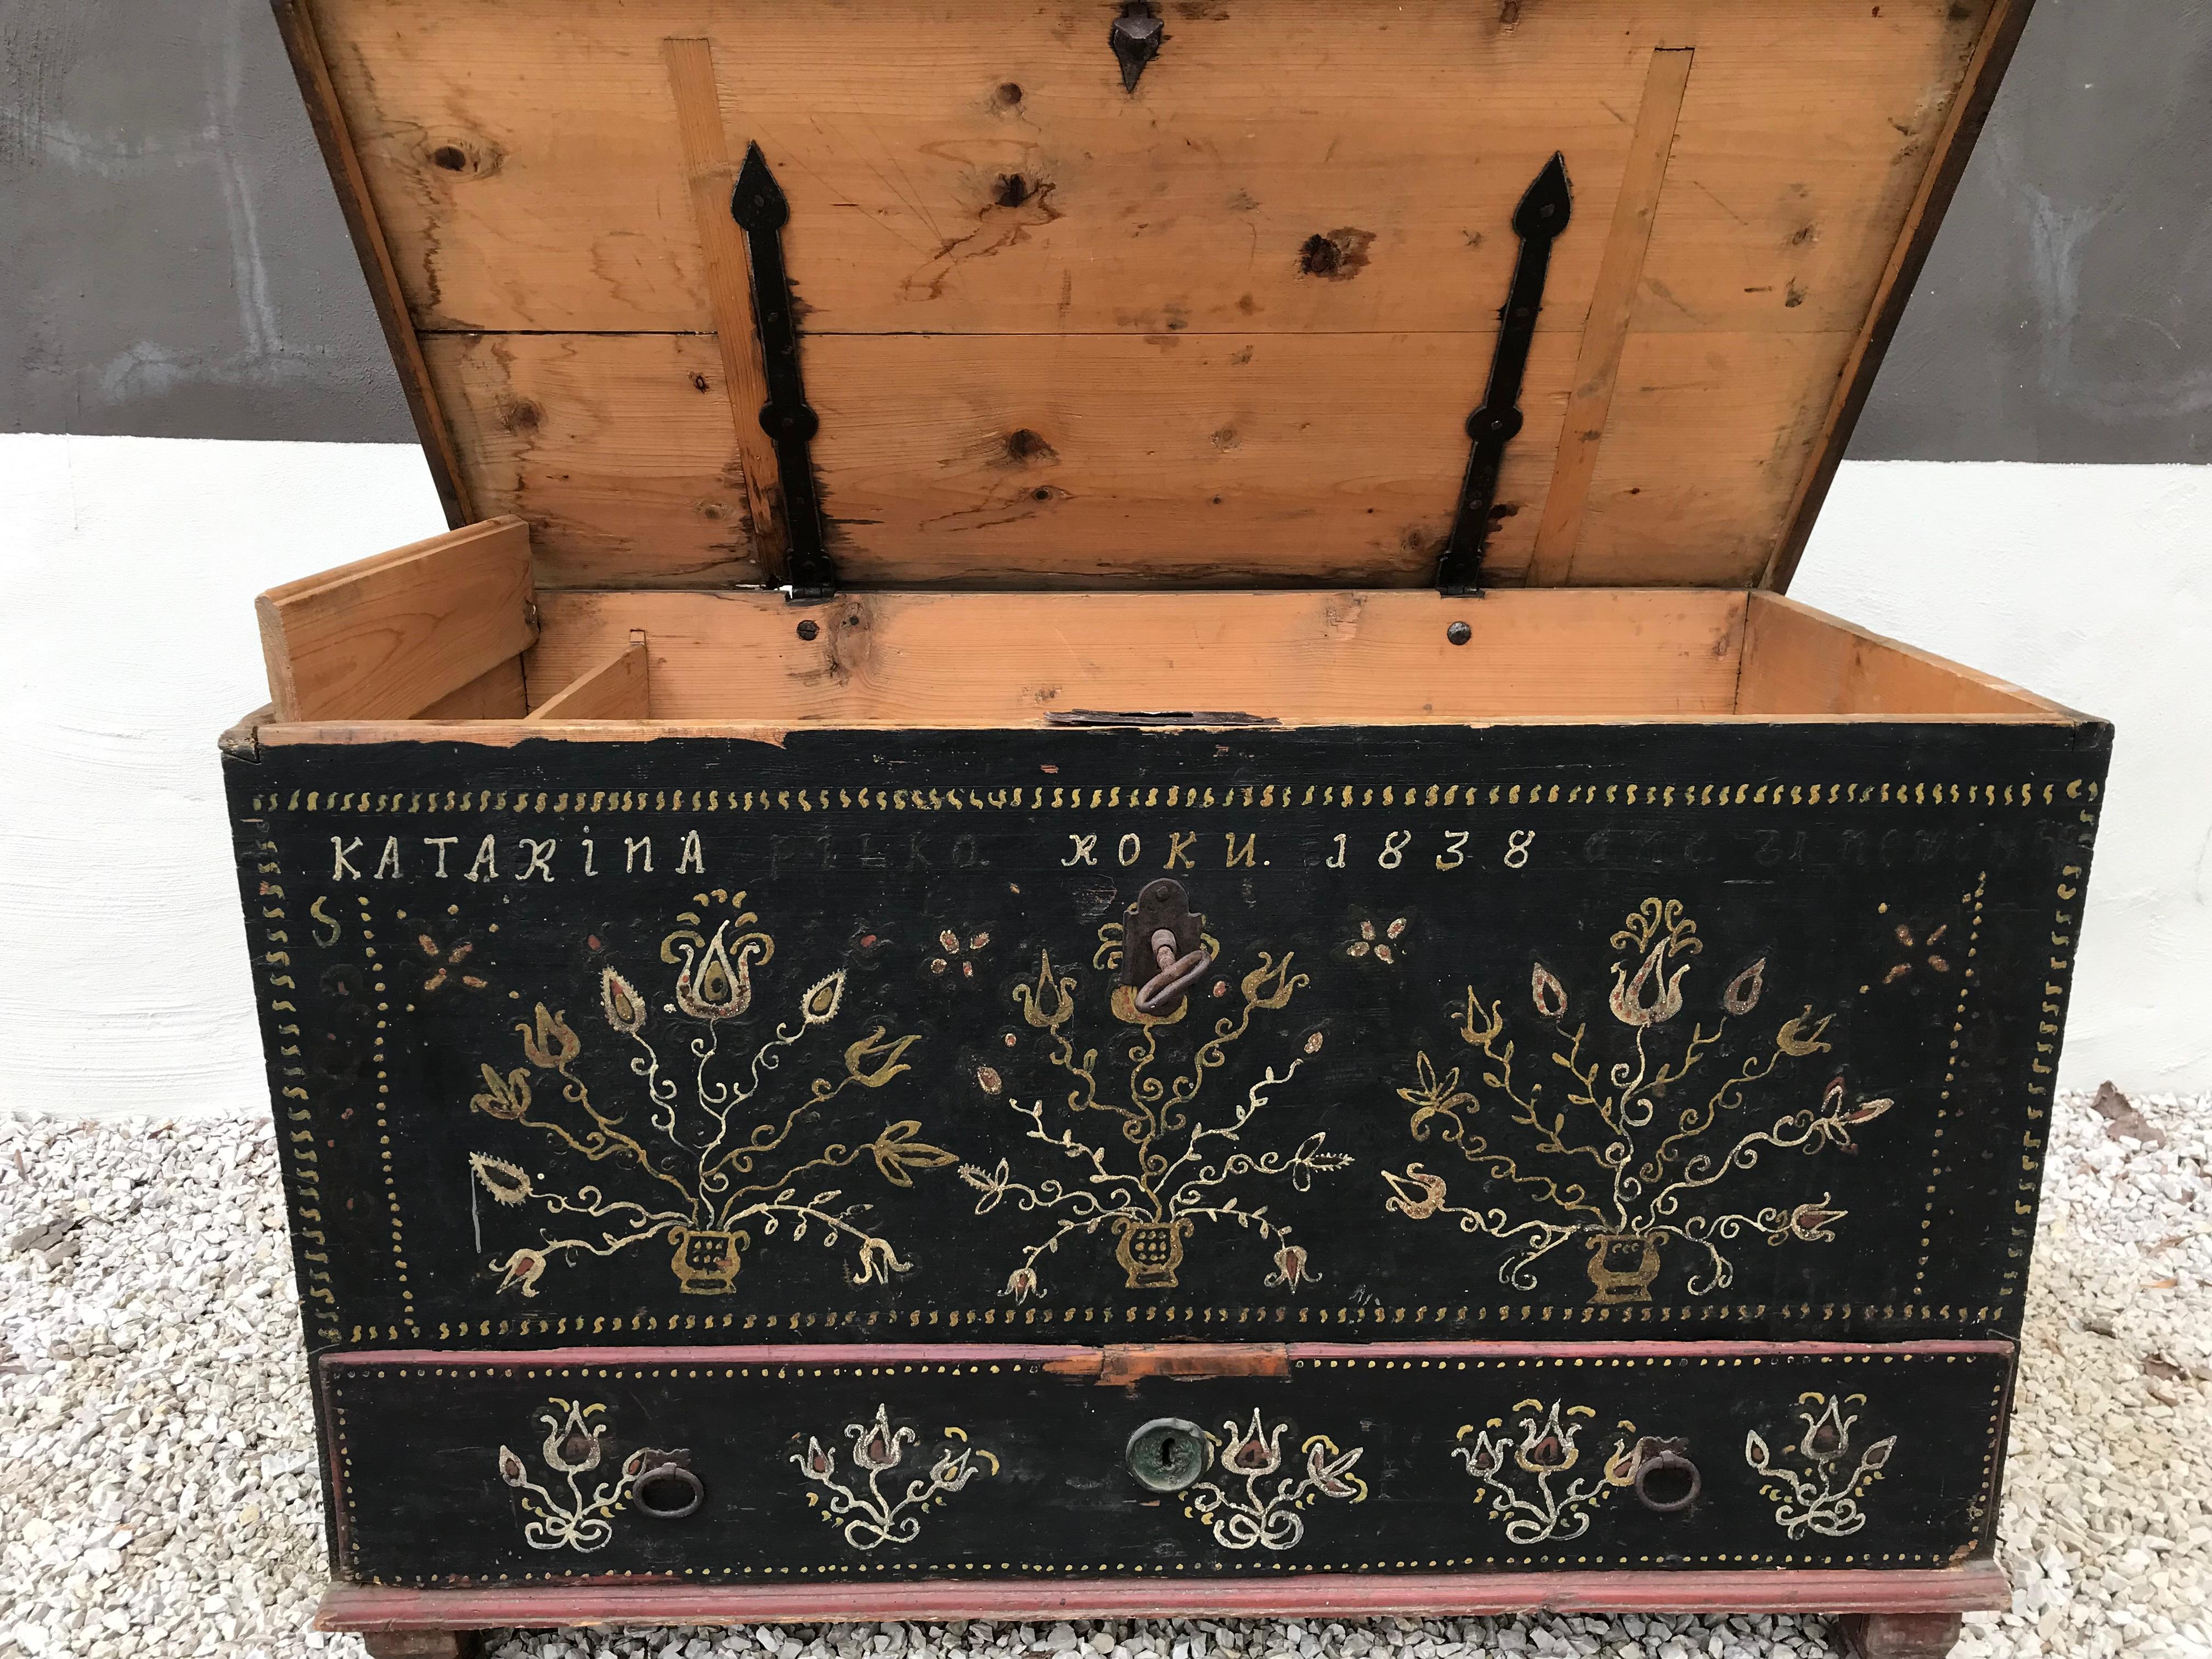 Ce coffre peint de poussière d'or et d'argent provient de
Slovaquie, année 1838.